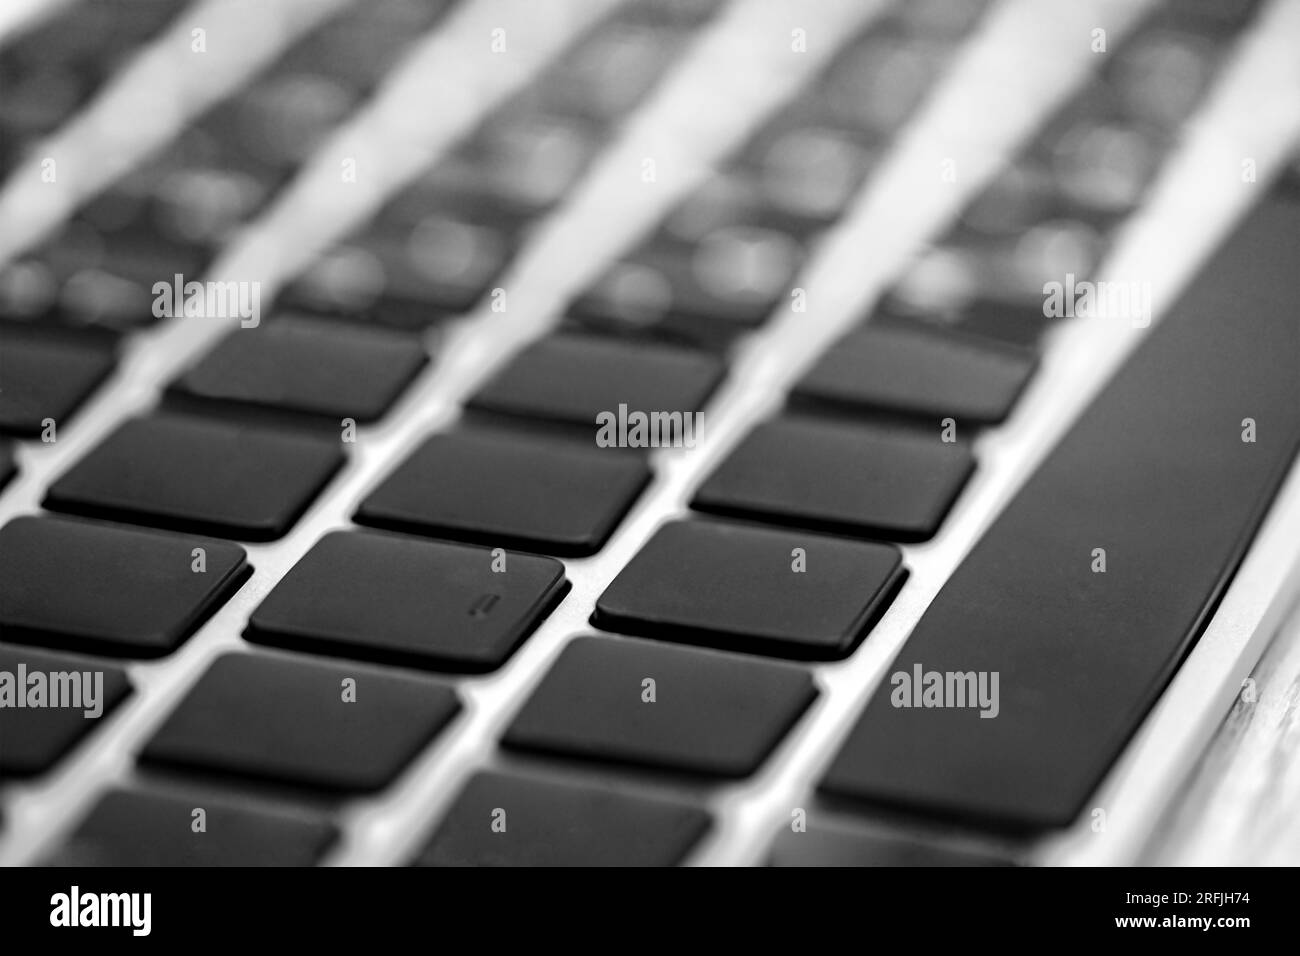 Dettaglio della tastiera di un notebook. Tastiera moderna per computer. Foto Stock